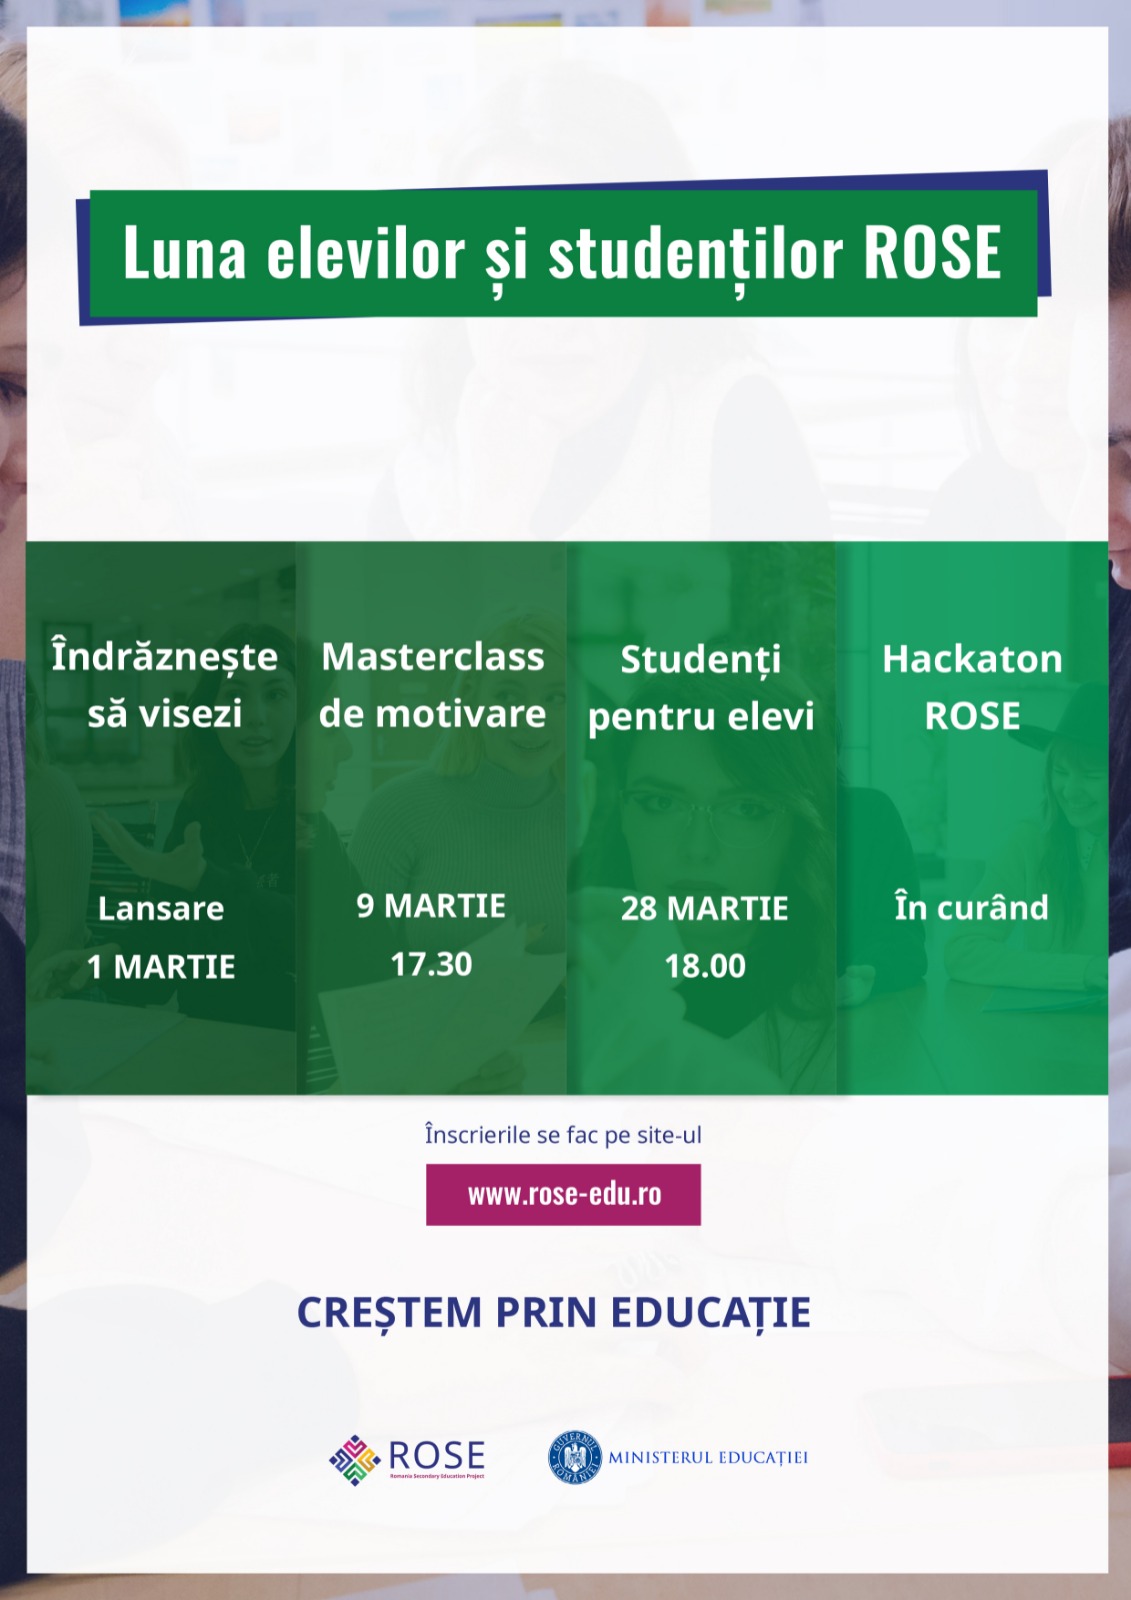 Calendar Luna elevilor si stidentilor ROSE